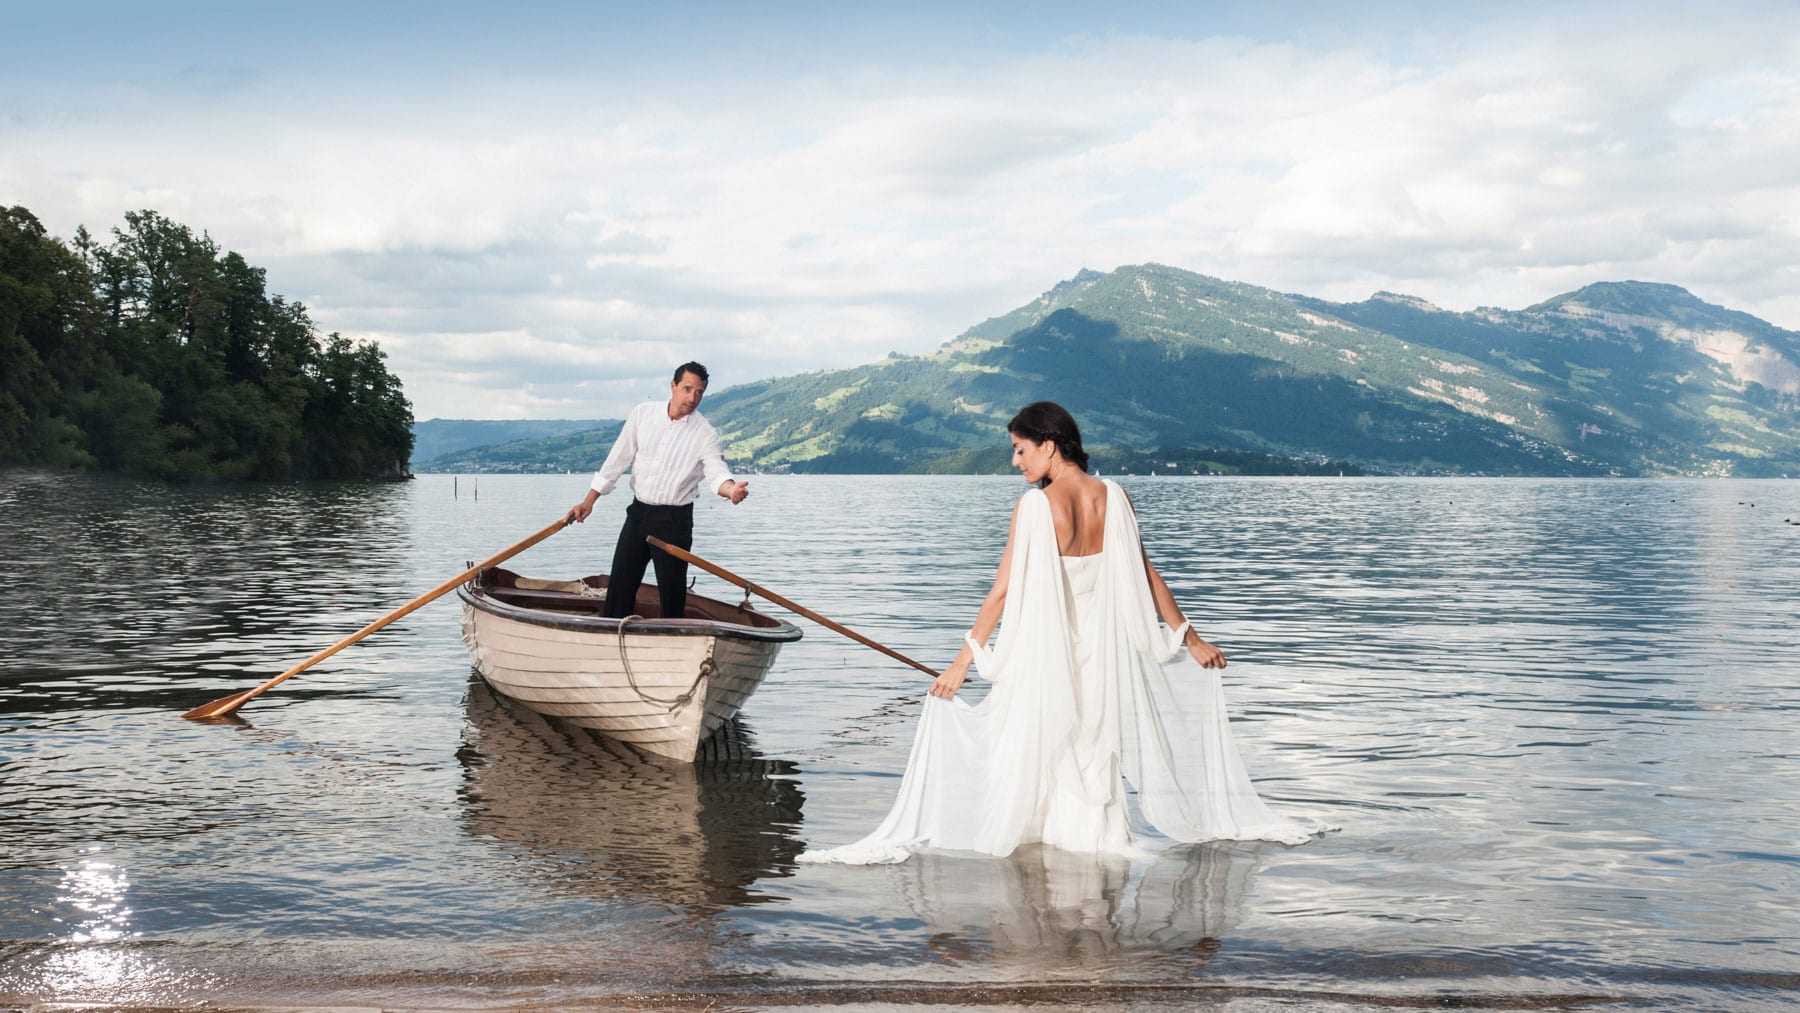 Delussu_Fotografie_Hochzeit_Wedding-Lake